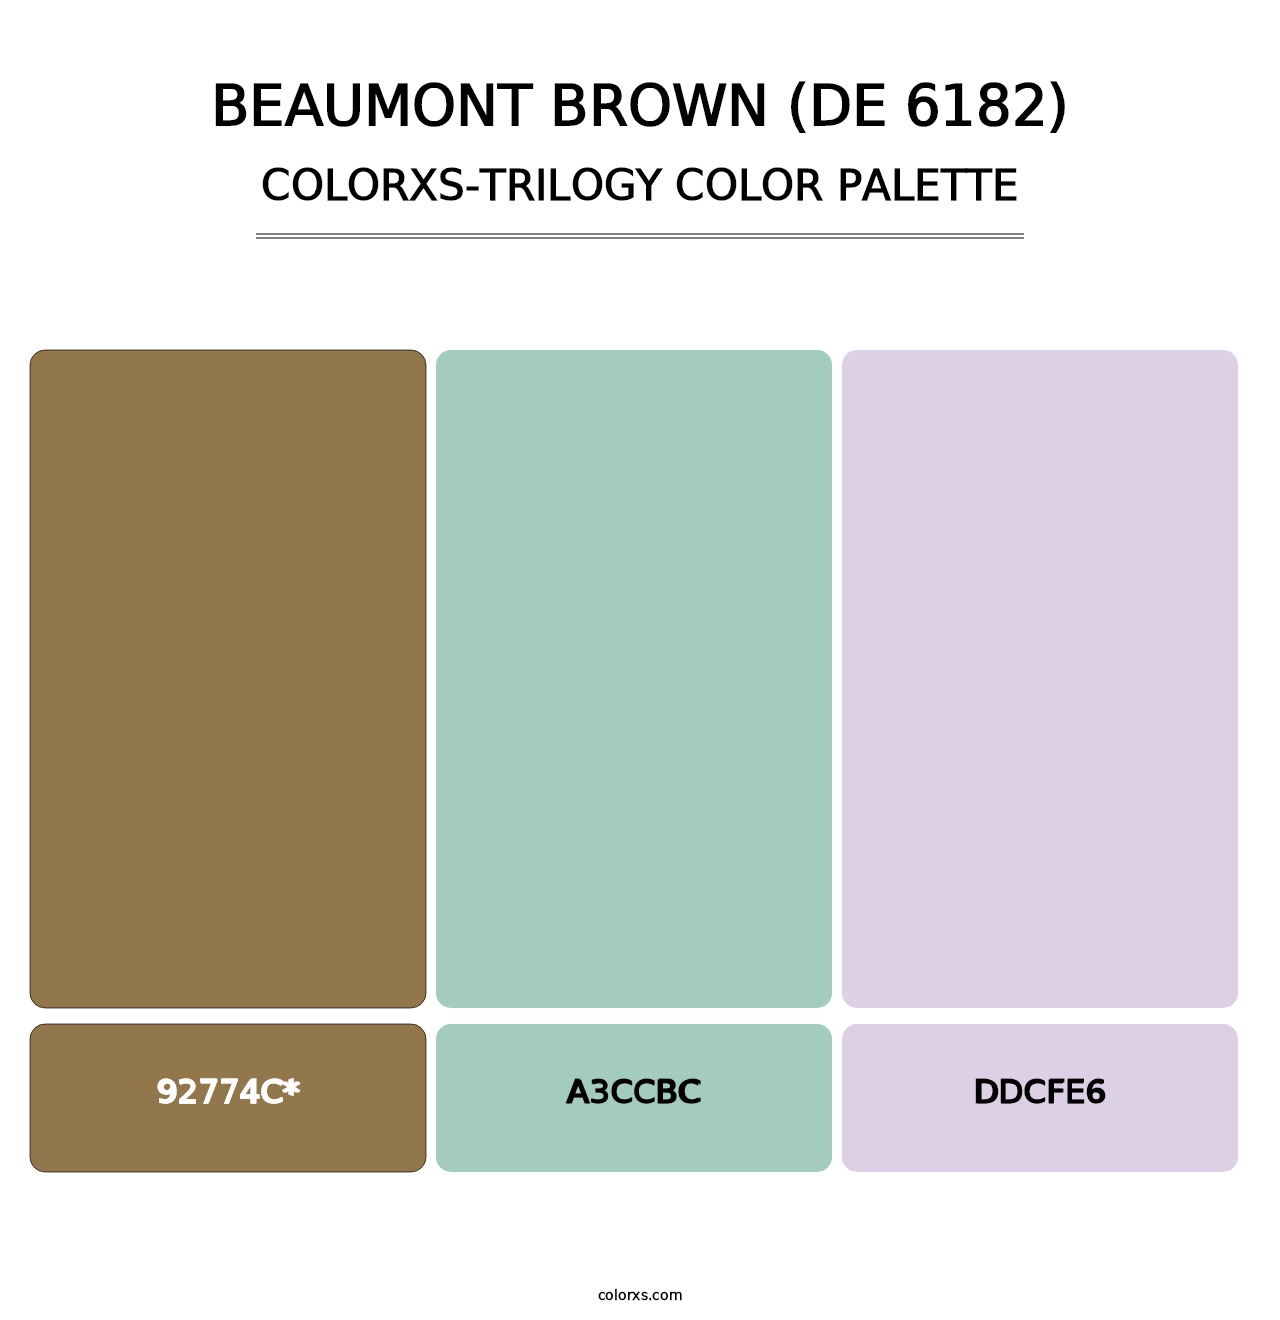 Beaumont Brown (DE 6182) - Colorxs Trilogy Palette